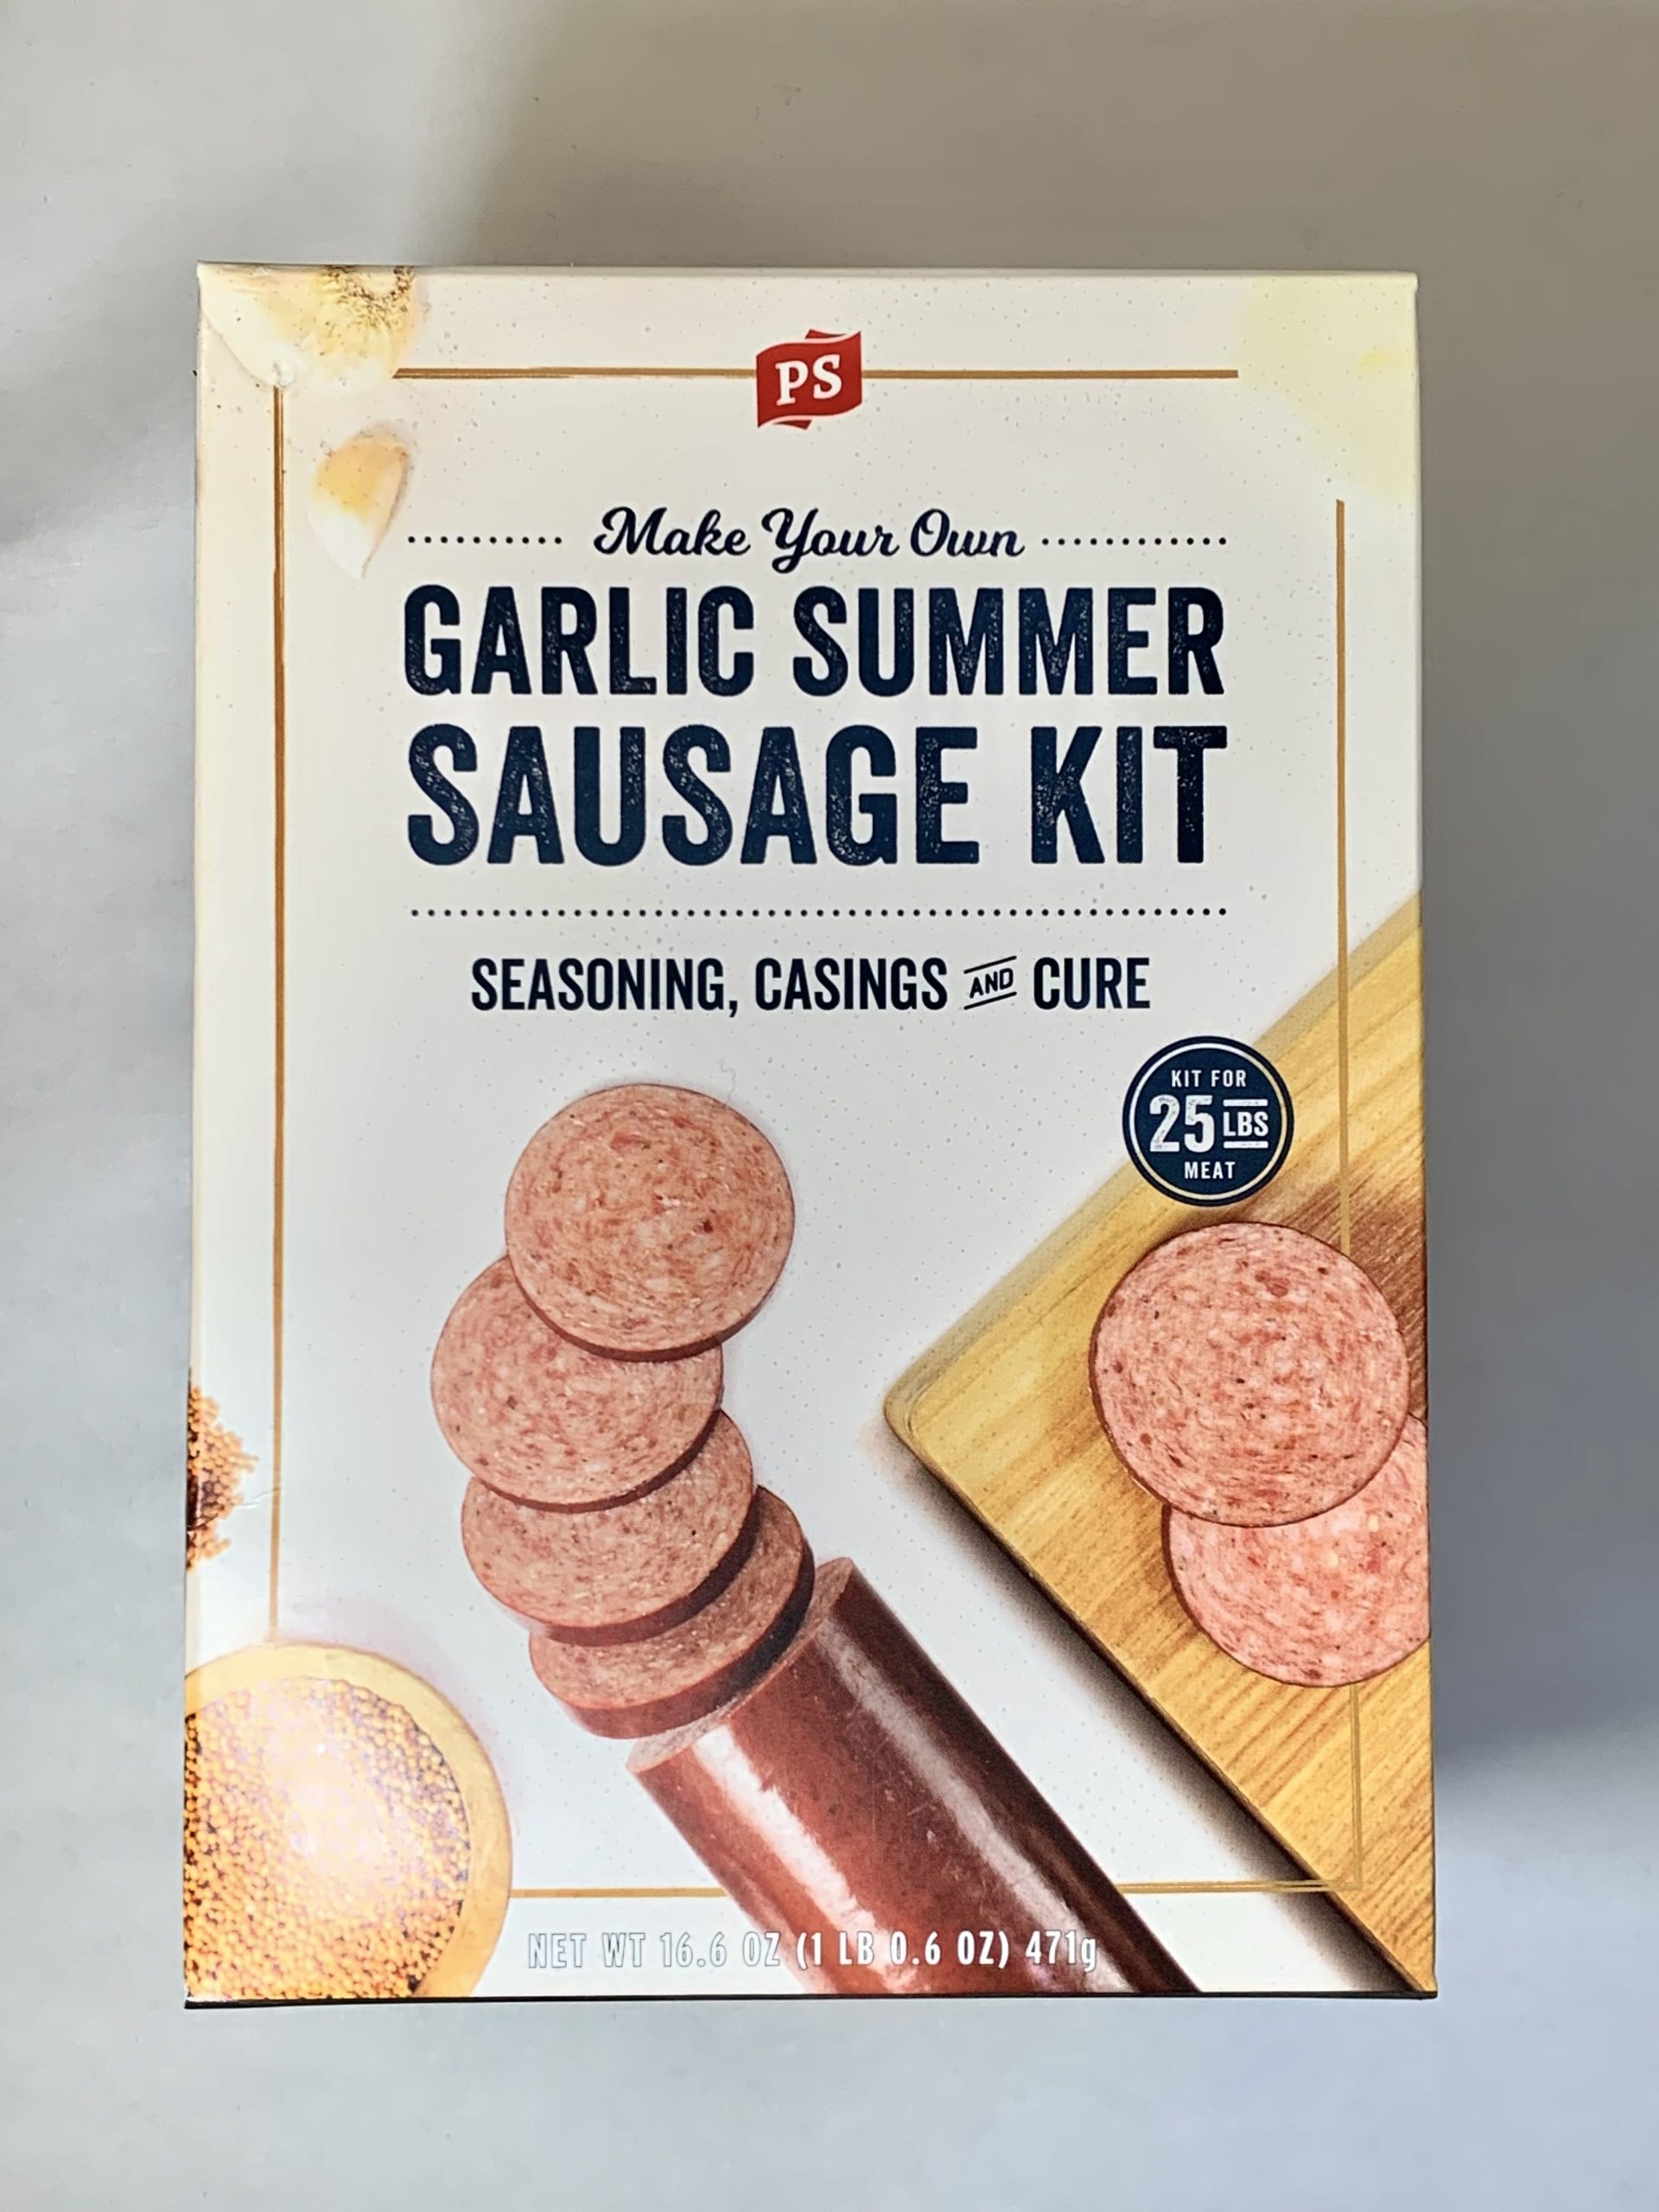 Sausage Making Kits